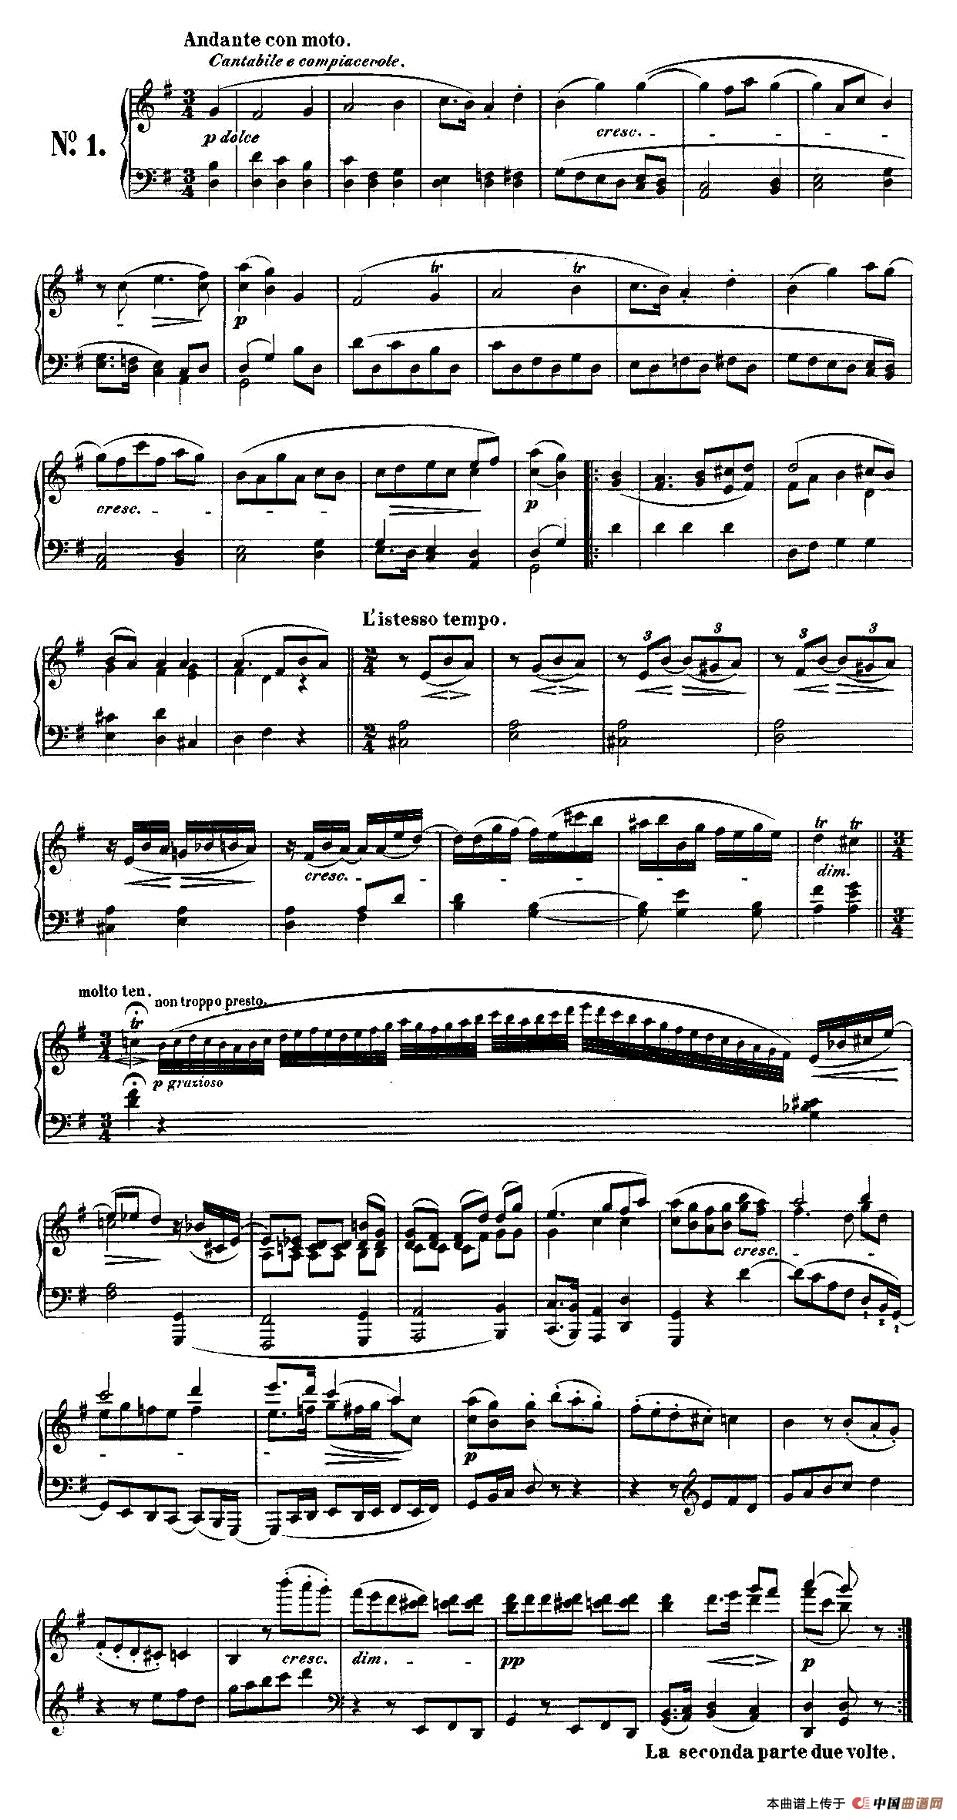 《贝多芬钢琴小品Op.126 之一》钢琴曲谱图分享